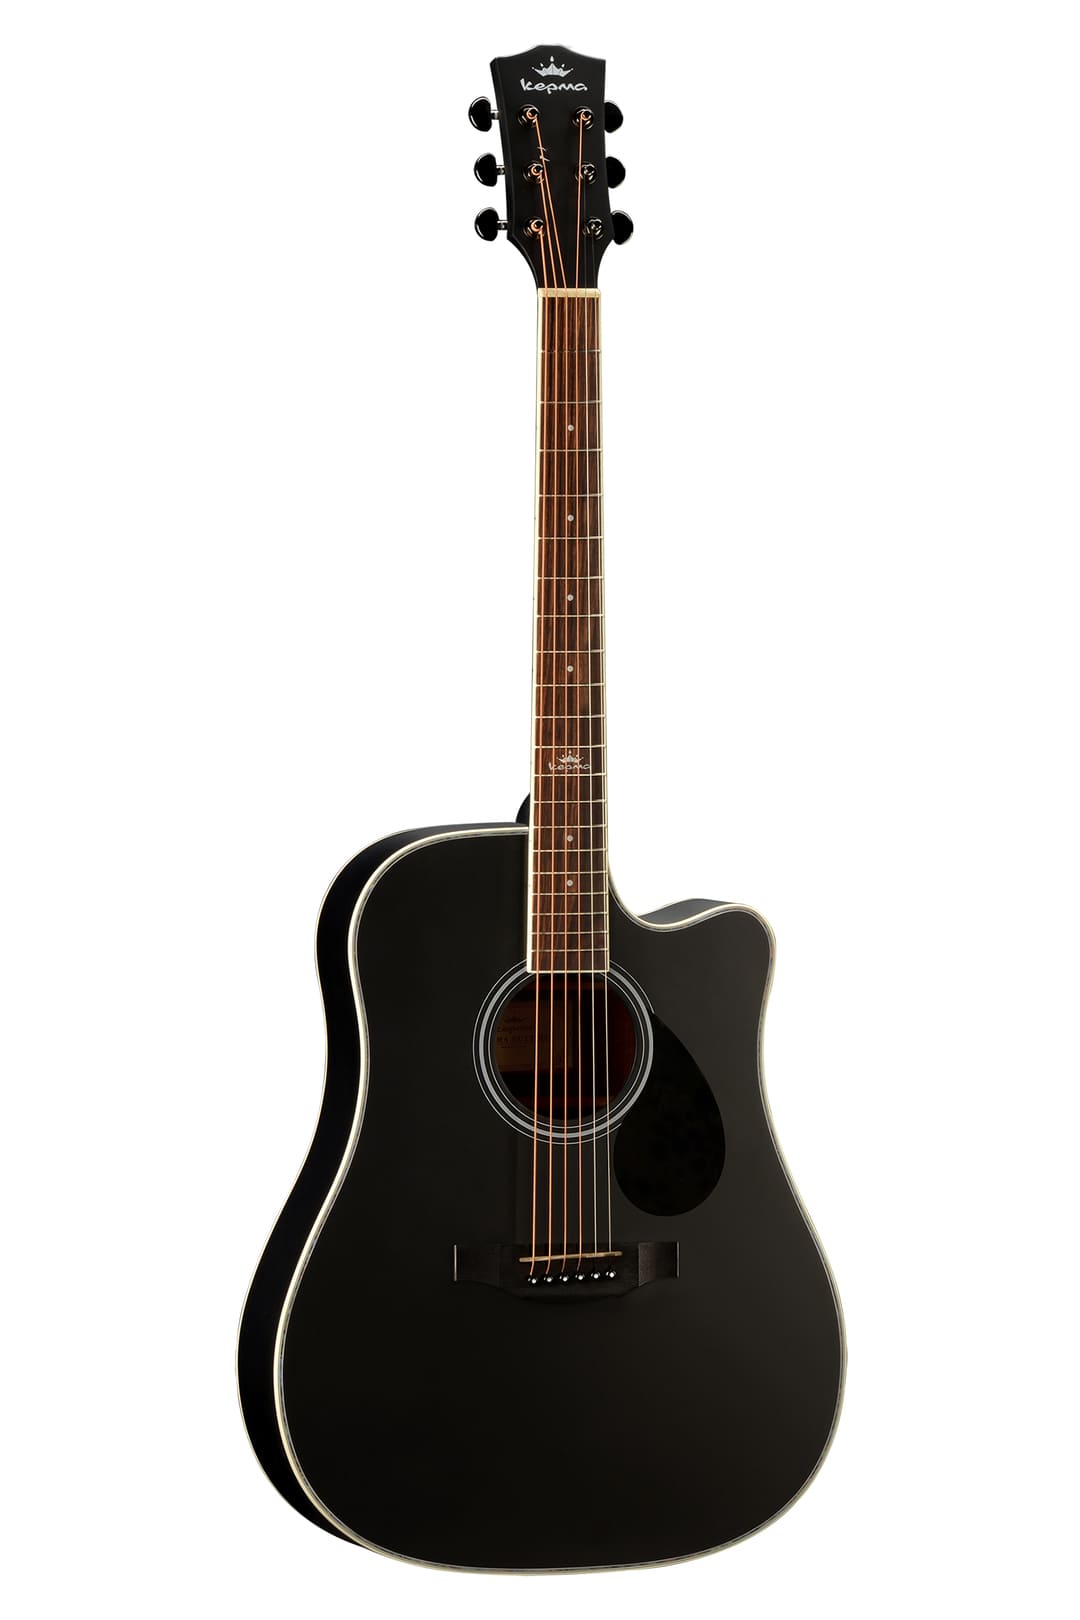 Акустические гитары Kepma D1C Black guitar fret выравнивание crowning file tool для luthier восстановление гитары обслуживание сменной шлифовальной бумаги